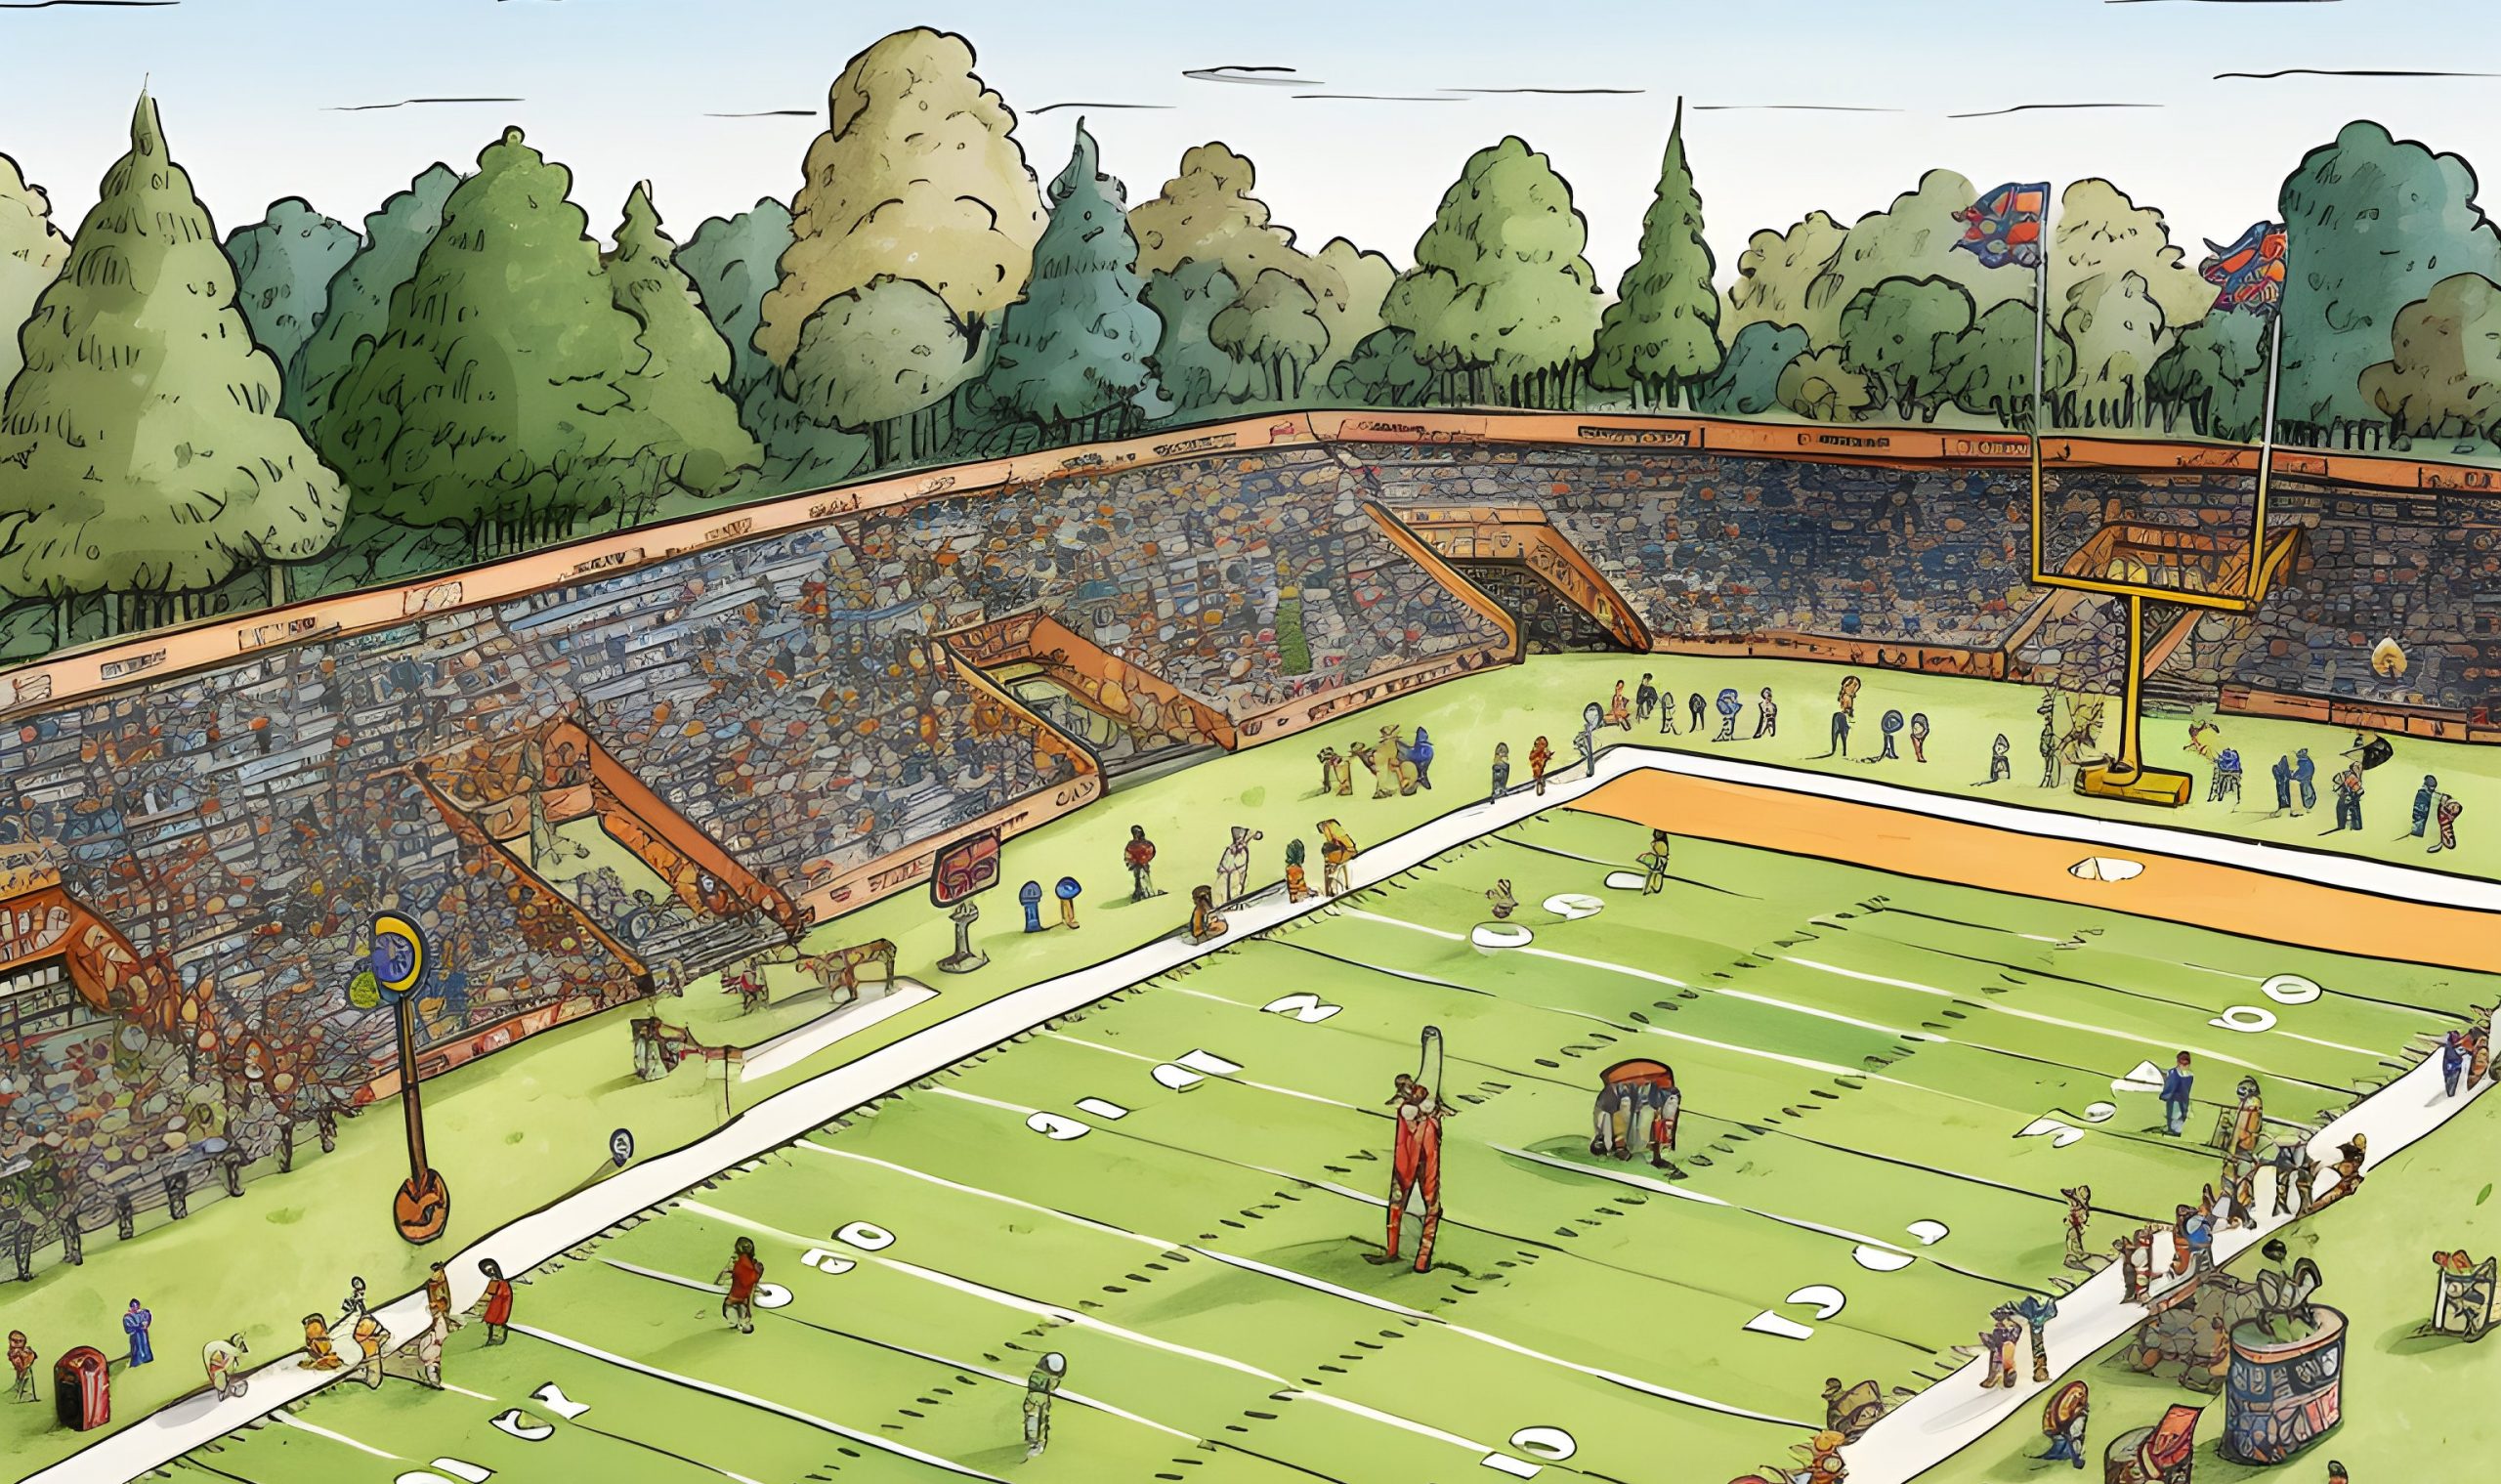 FootballR - NFL Football-Spielfeld - Eine Zeichentrickillustration eines Football Feldes mit einem Touchdown.